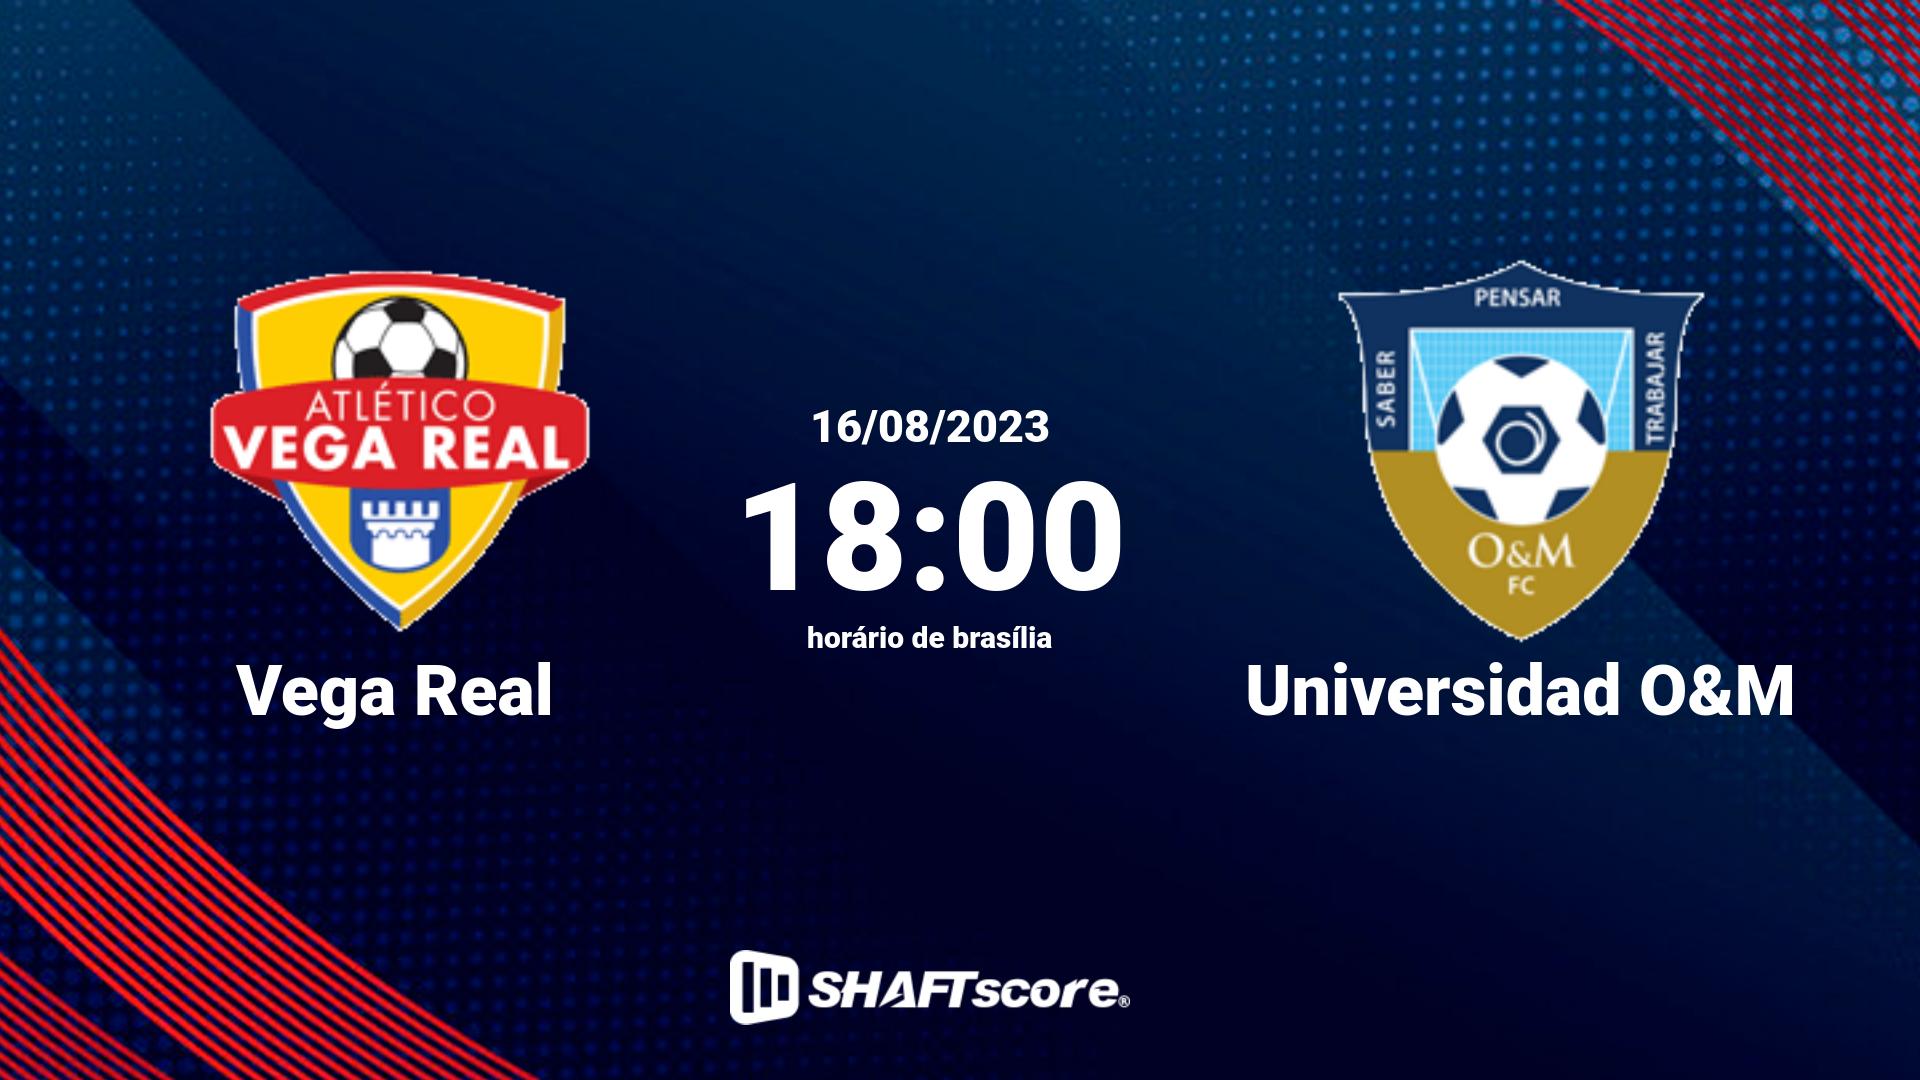 Estatísticas do jogo Vega Real vs Universidad O&M 16.08 18:00